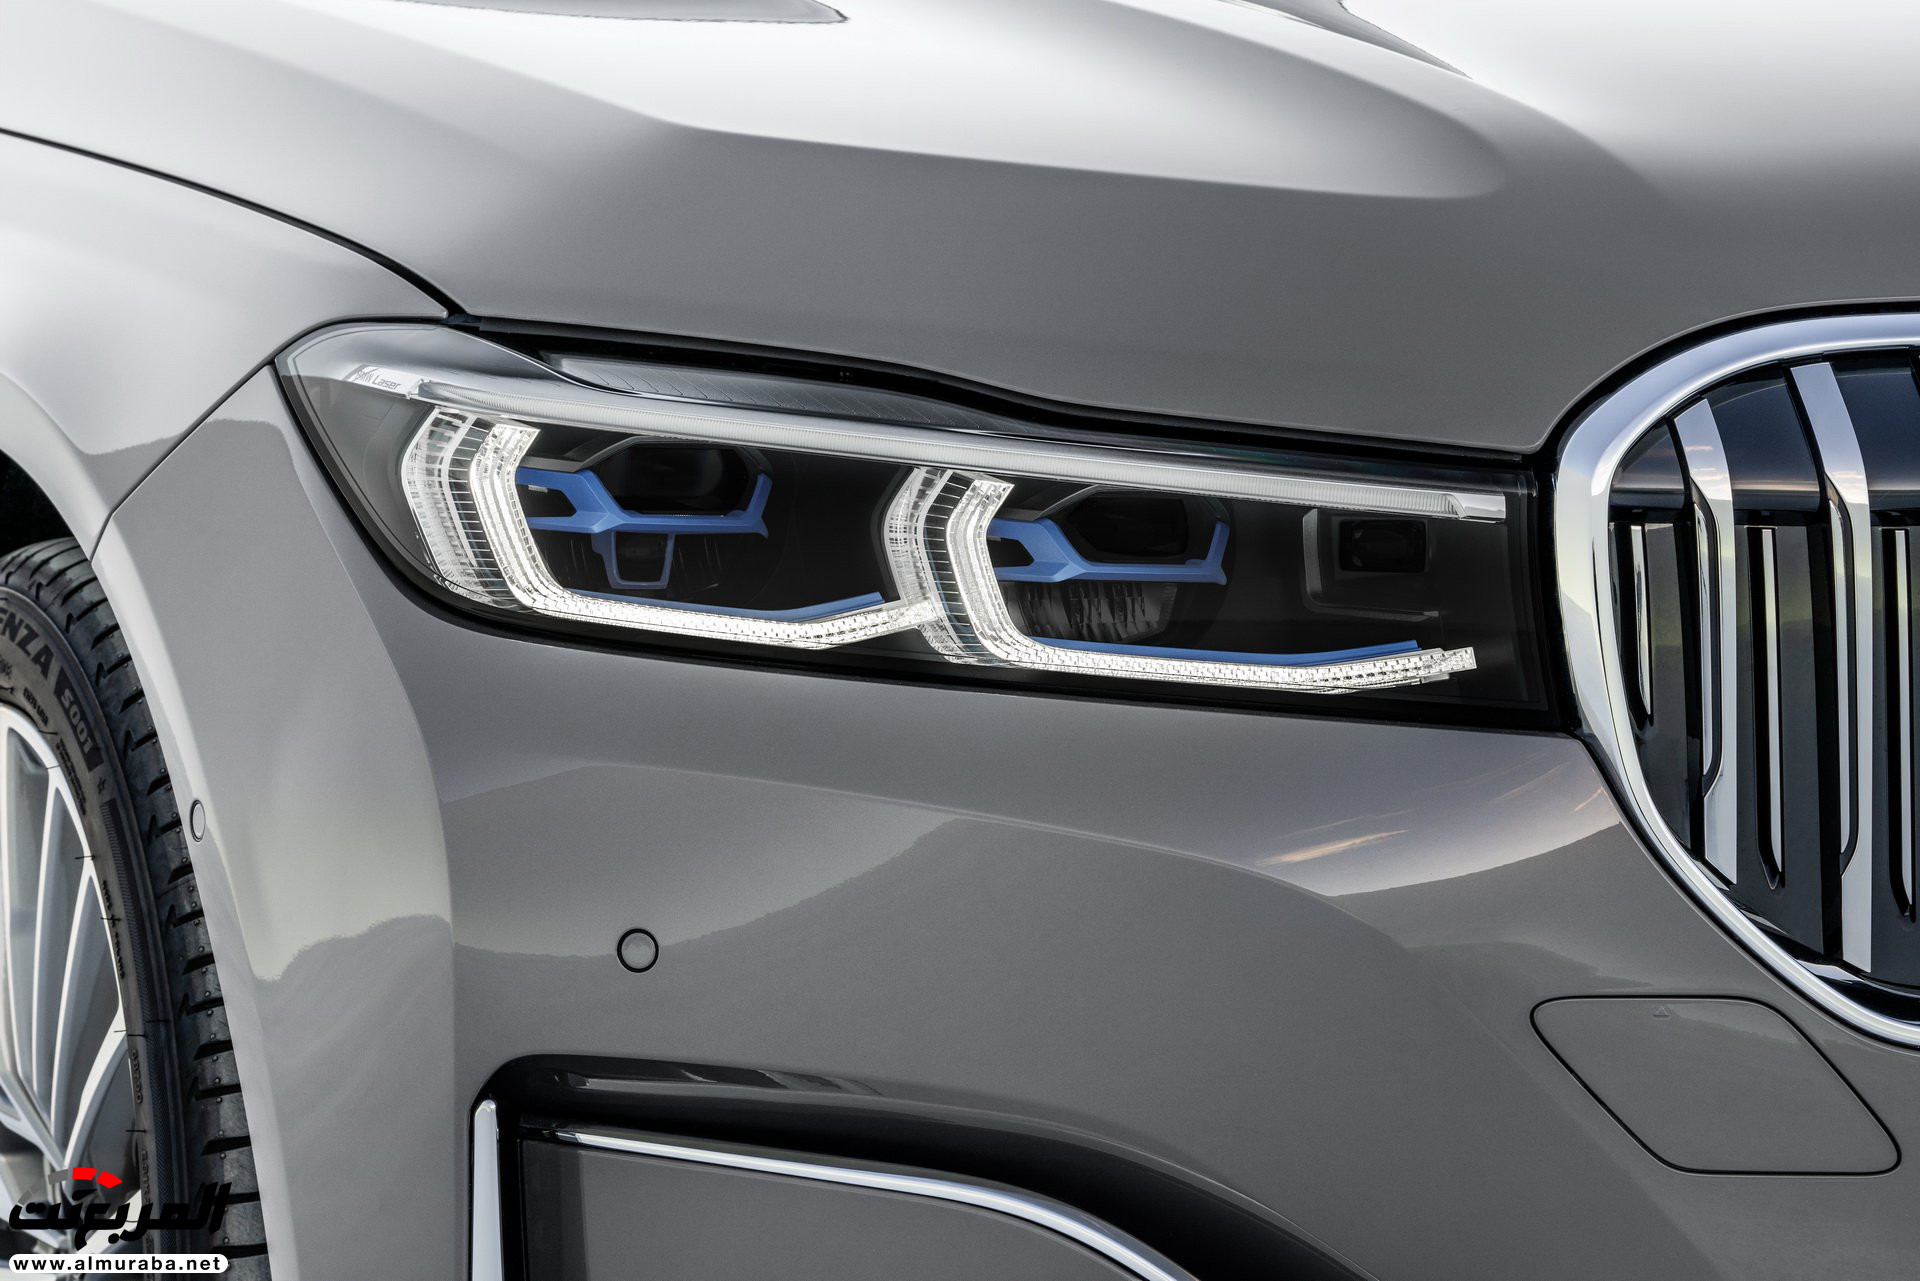 بي ام دبليو الفئة السابعة 2020 المحدثة تكشف نفسها رسمياً "صور ومواصفات" BMW 7 Series 236